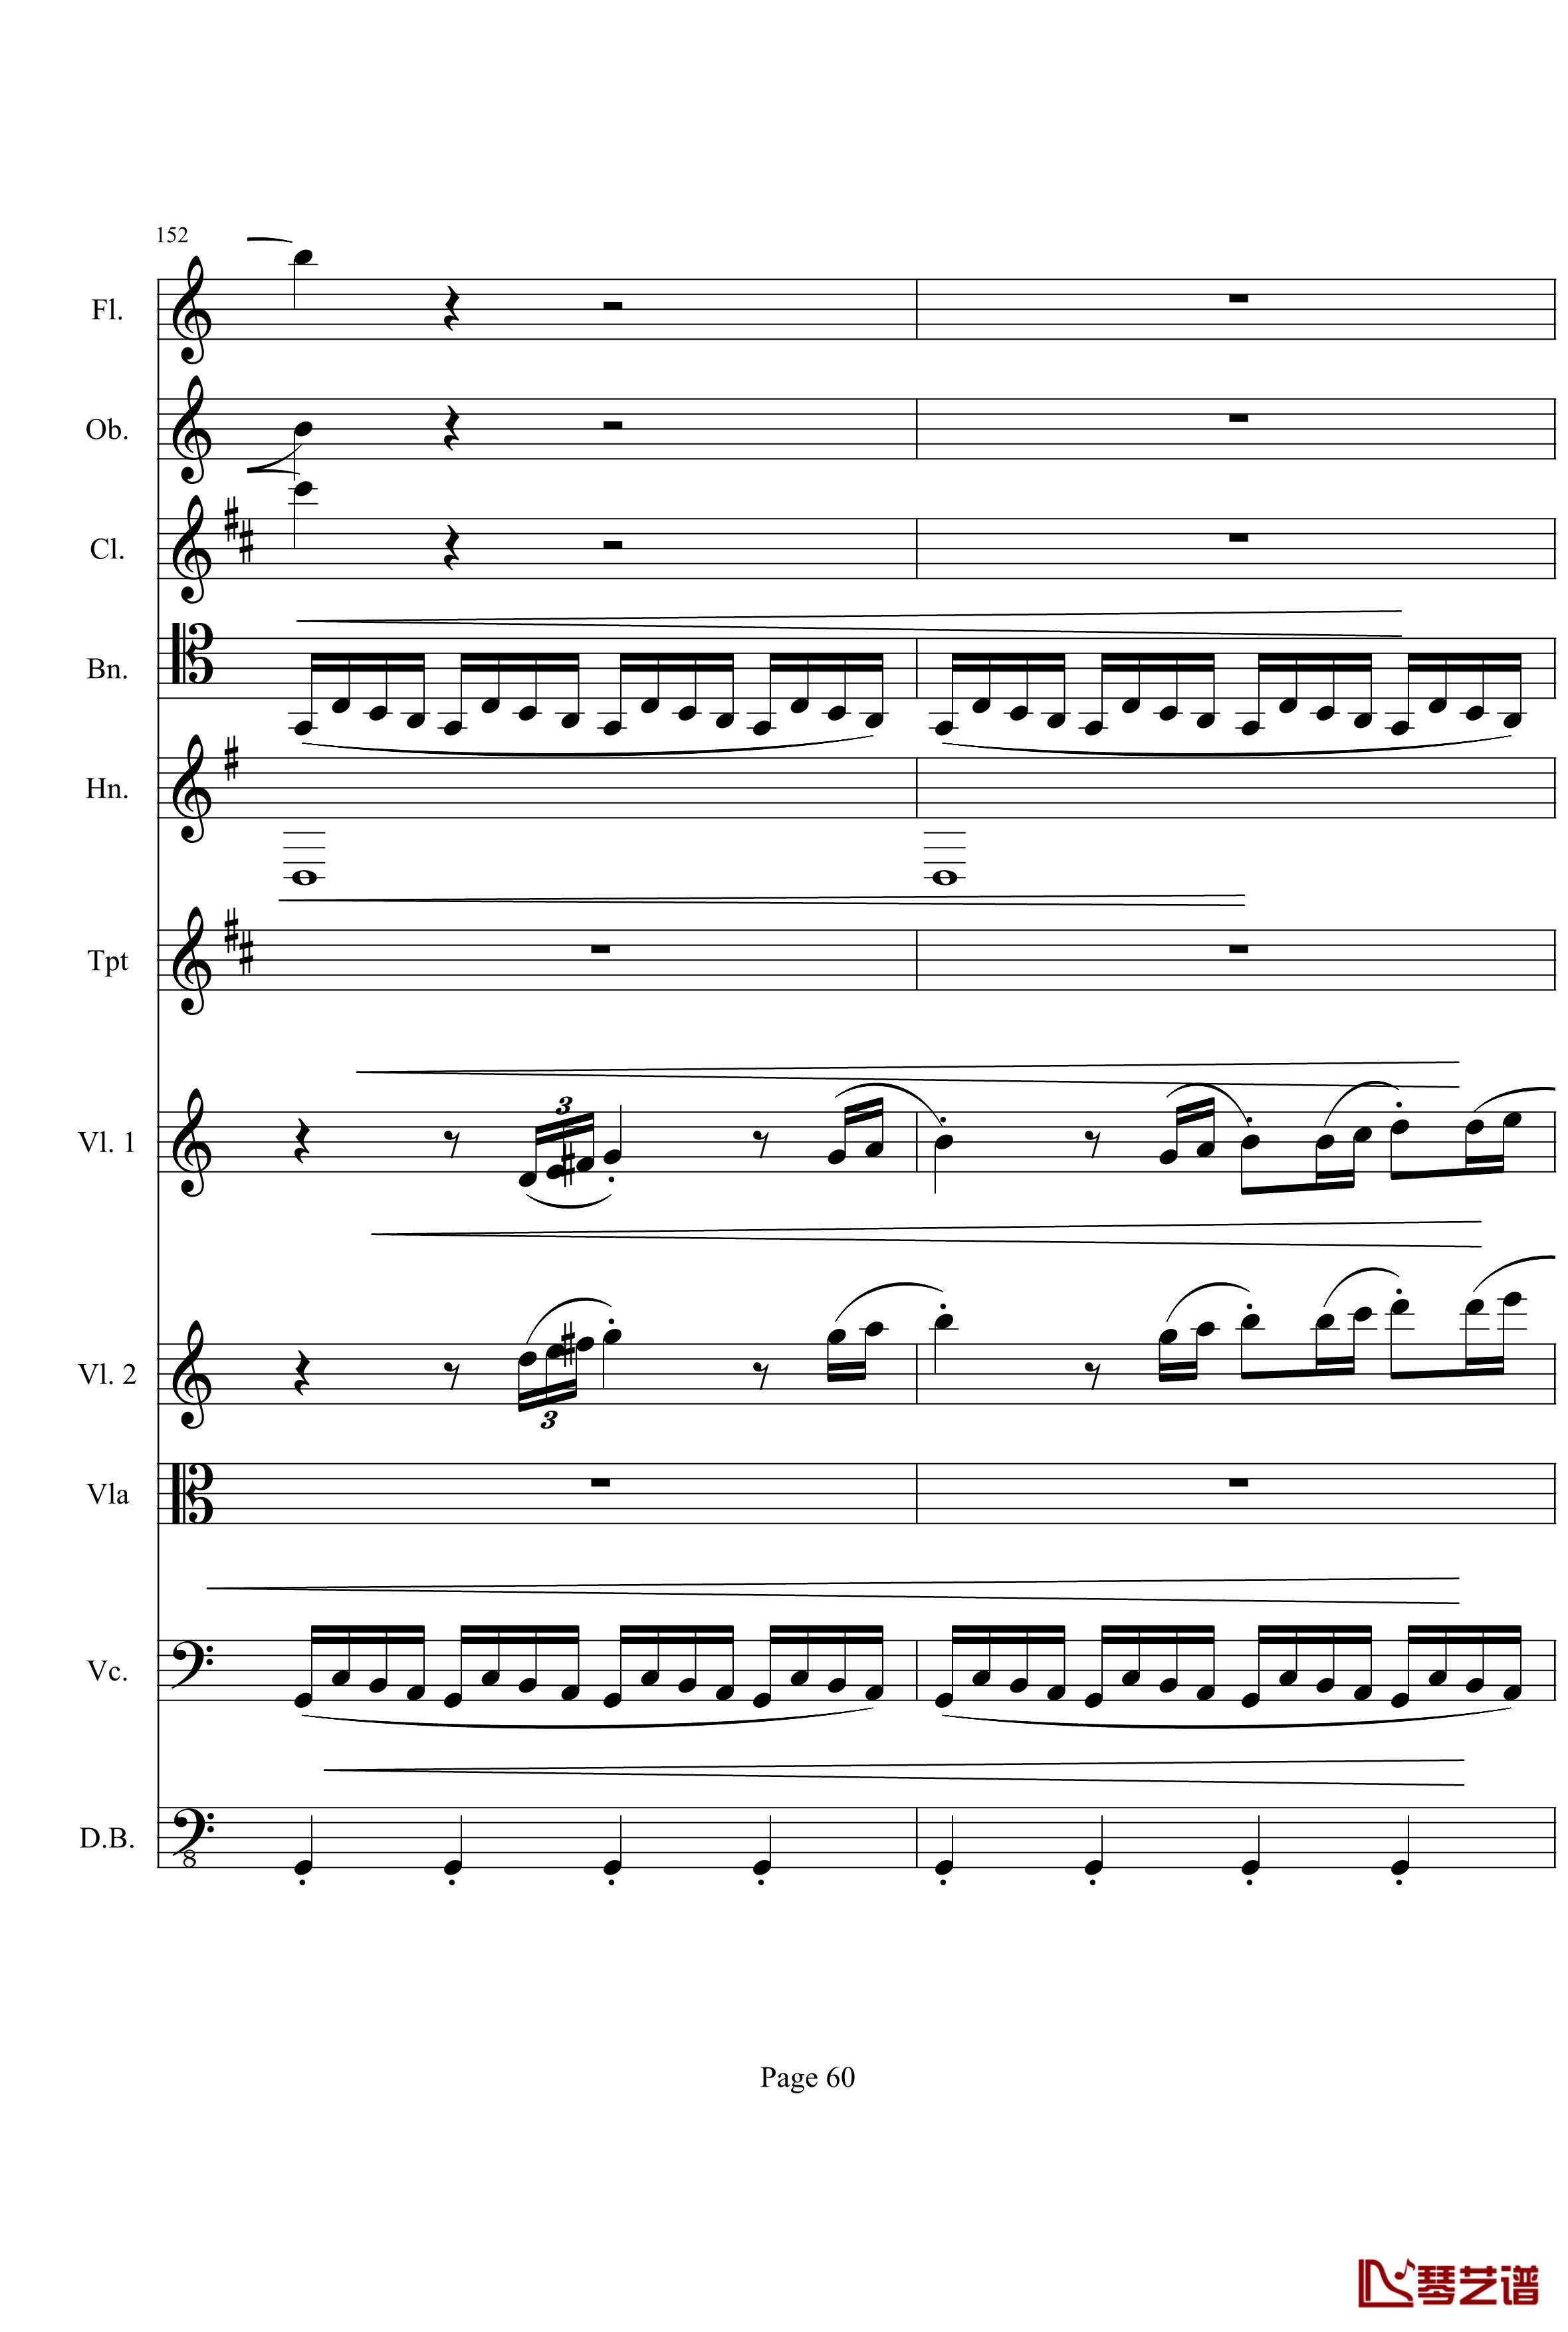 奏鸣曲之交响钢琴谱-第21-Ⅰ-贝多芬-beethoven60